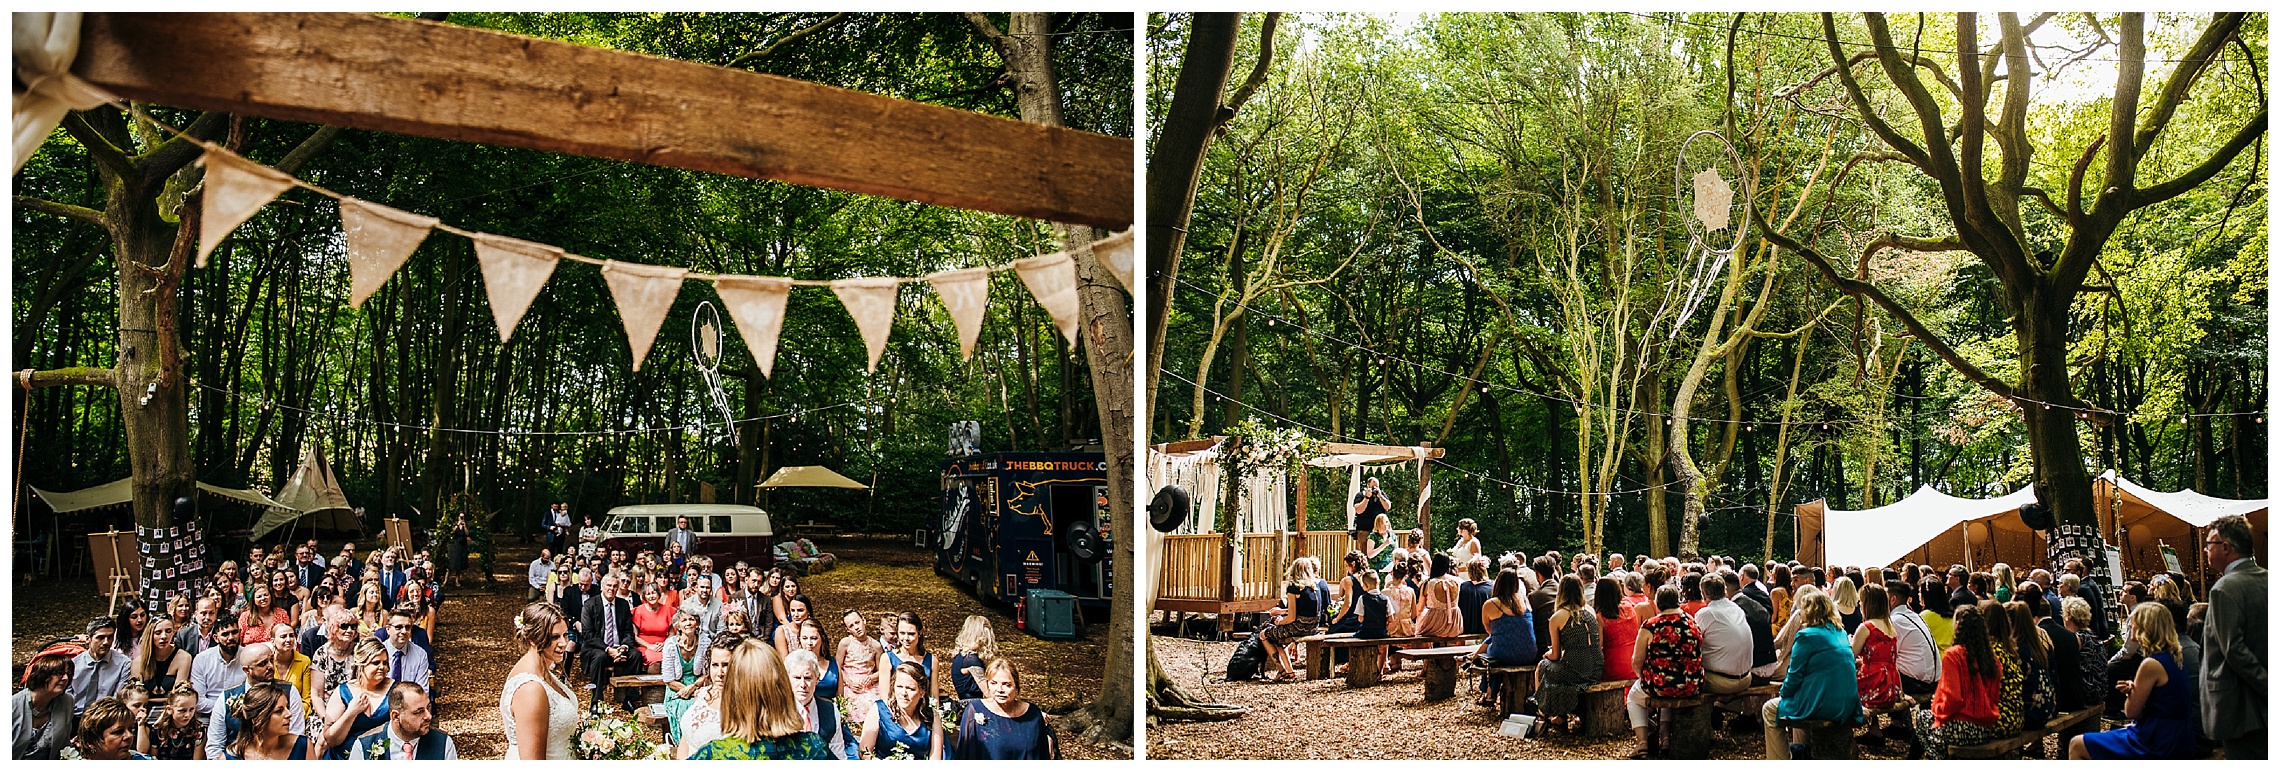 outdoor woodland weddings venue